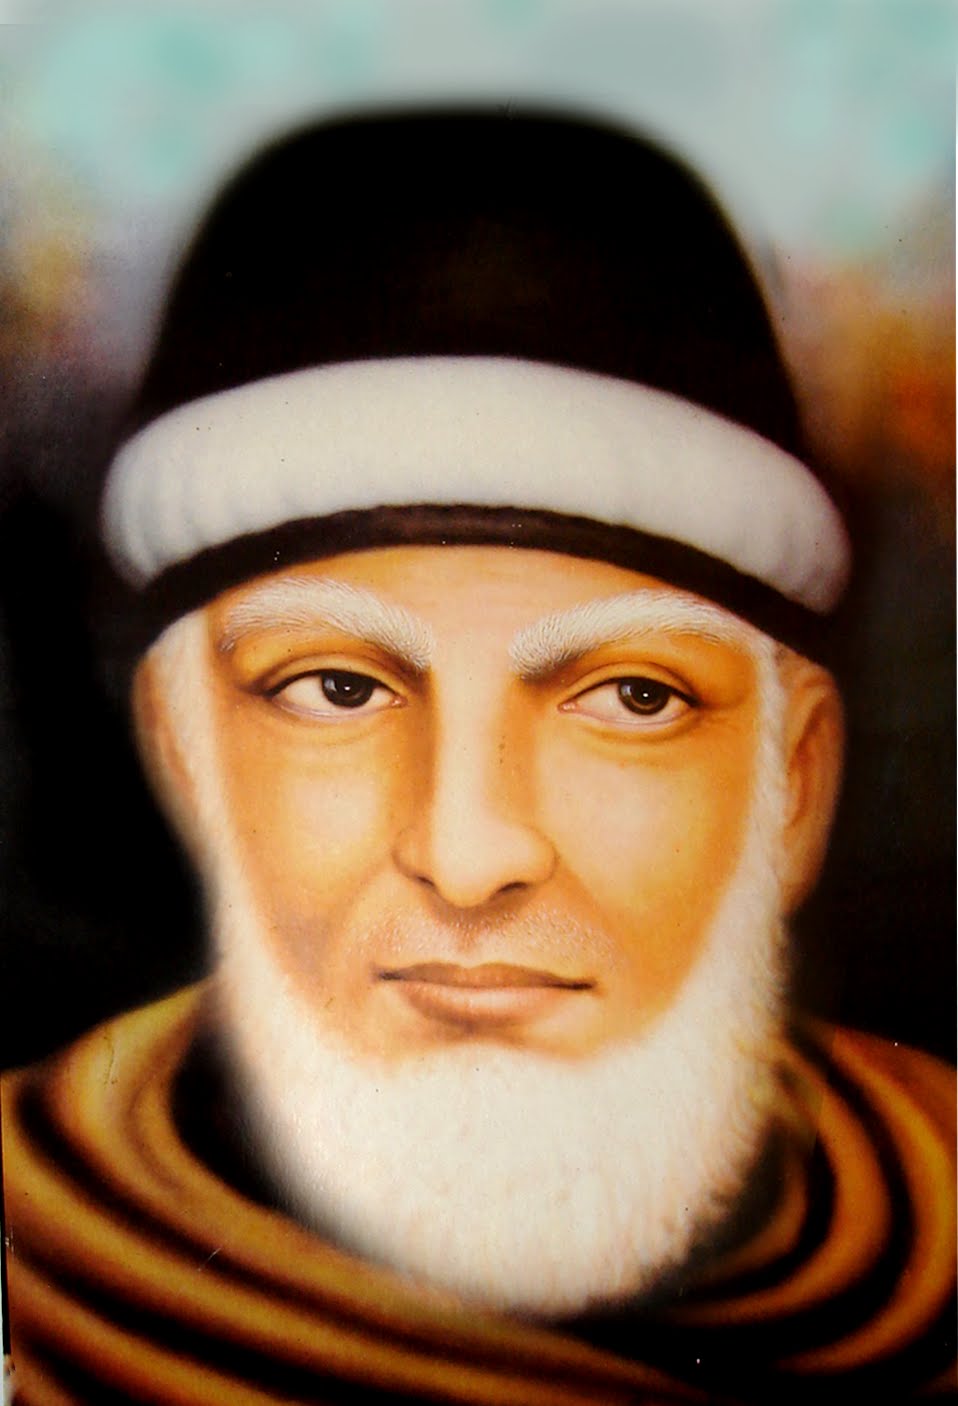 Sheikh Abdul Qadir Jailani